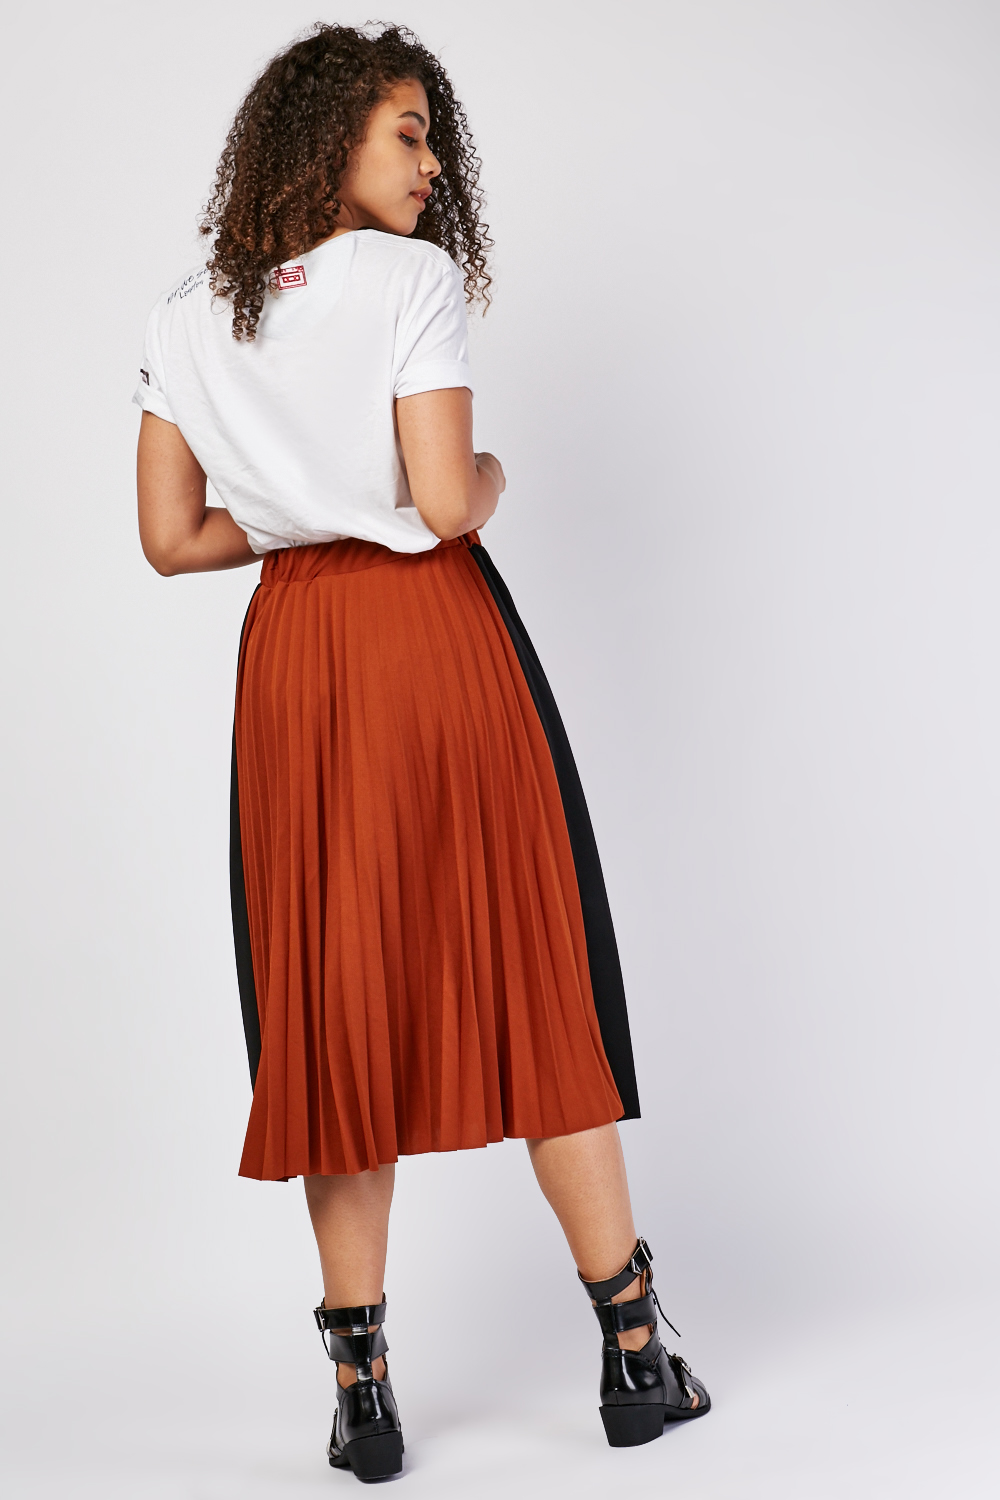 Contrast Panel Pleated Midi Skirt - Just $7